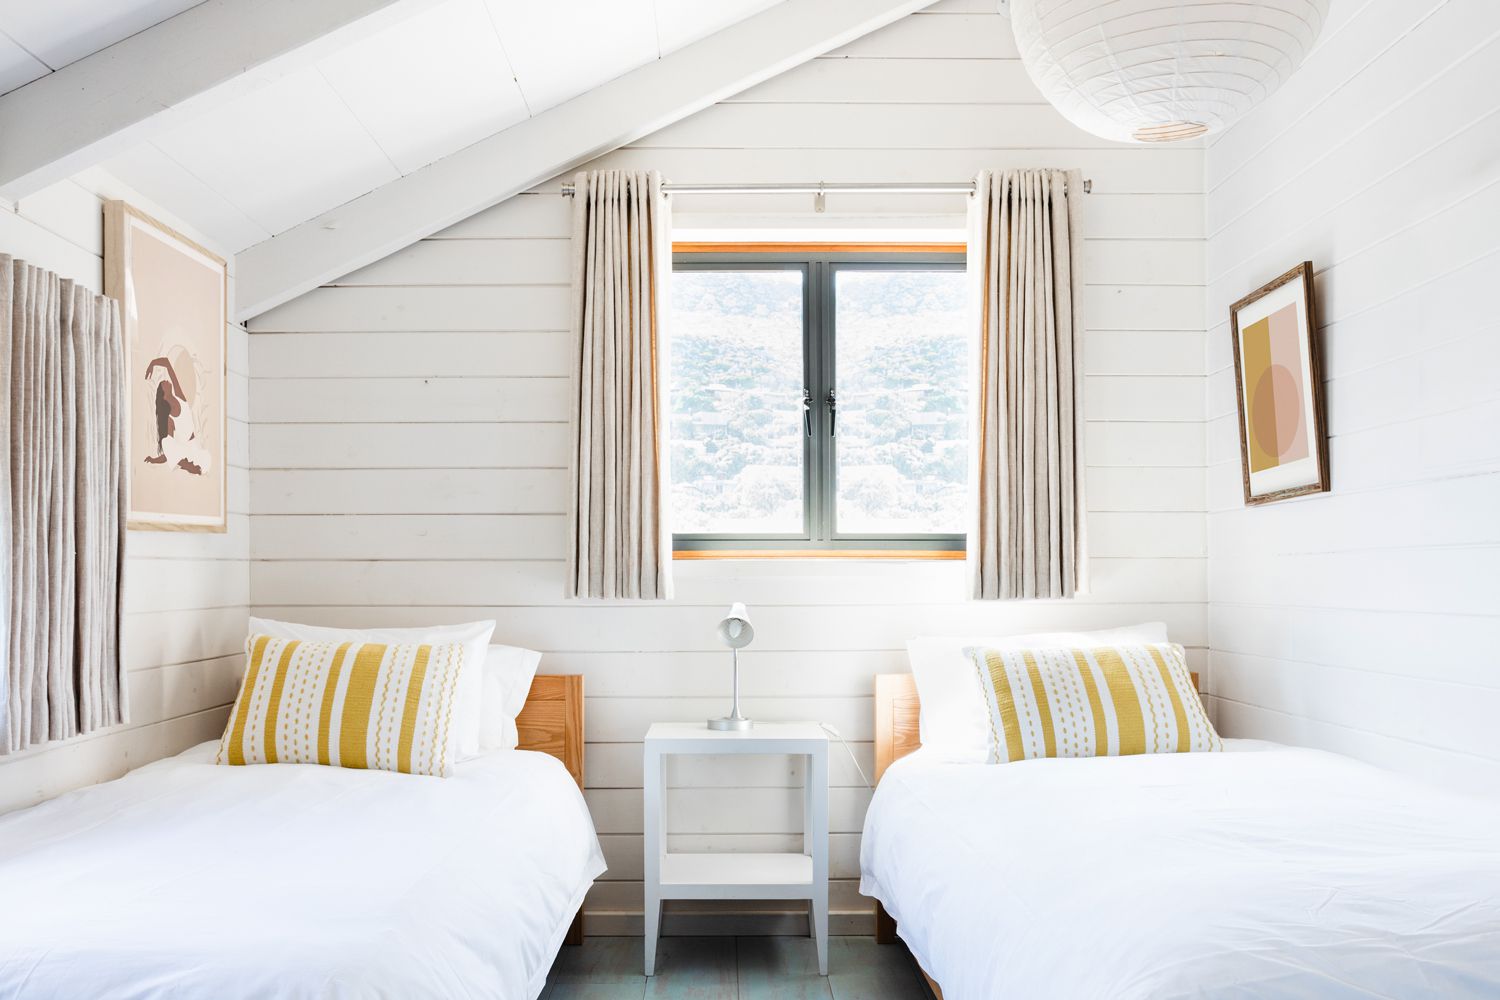 Dormitorio decorado con paredes de shiplap blanco y dos camas individuales bajo la ventana